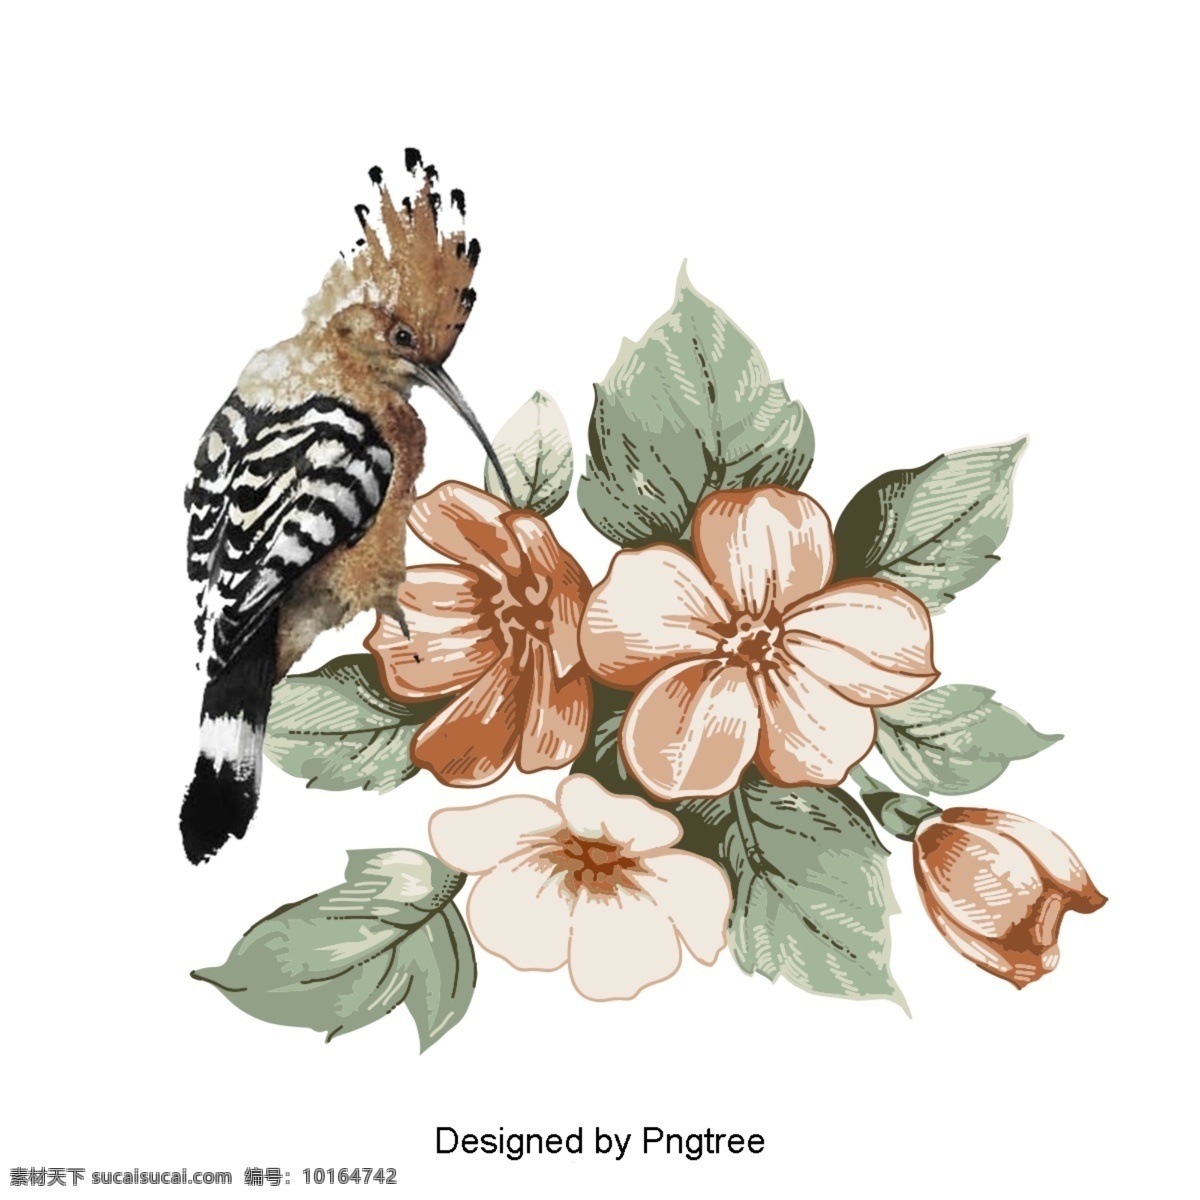 手绘花鸟图案 手绘 极 简 主义 鸟 动物 自然 图形设计 材料 图像 抽象 颜色